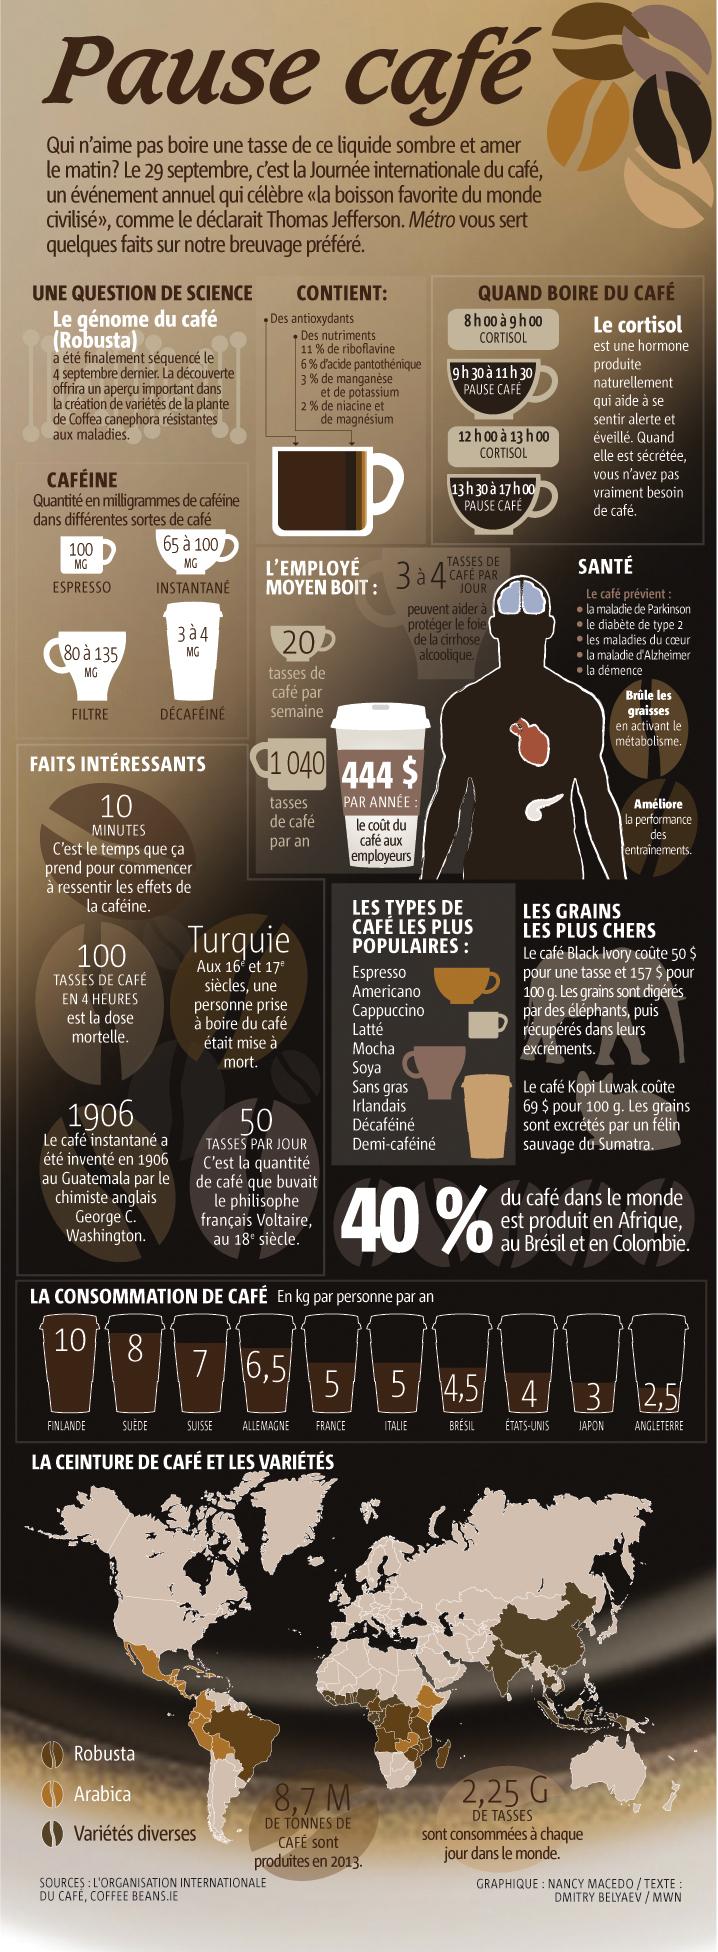 info graphie que les faits du Café - Journée international du Café